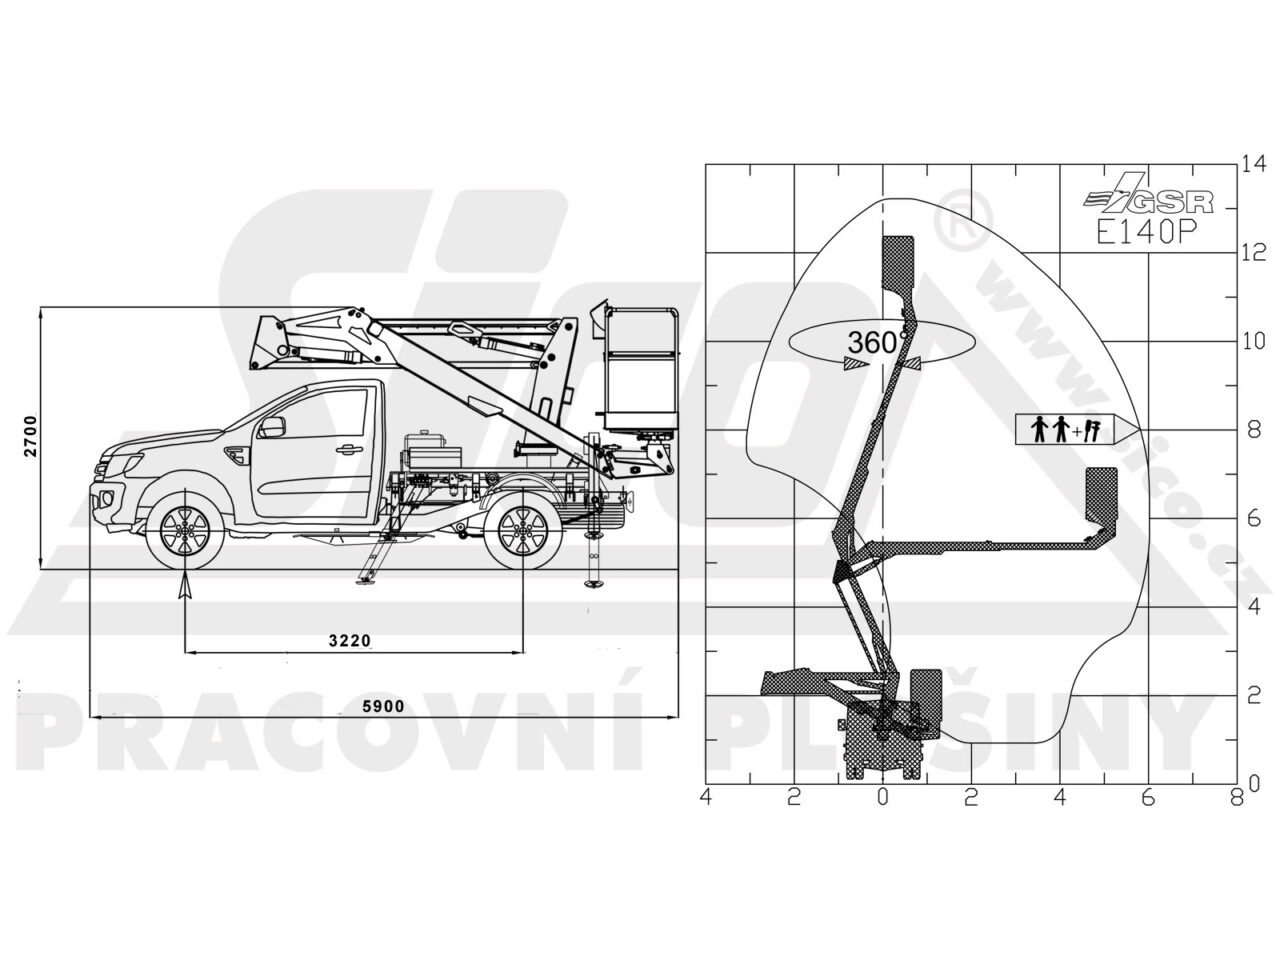 Ford Ranger GSR E140P - pracovní diagram a rozměry